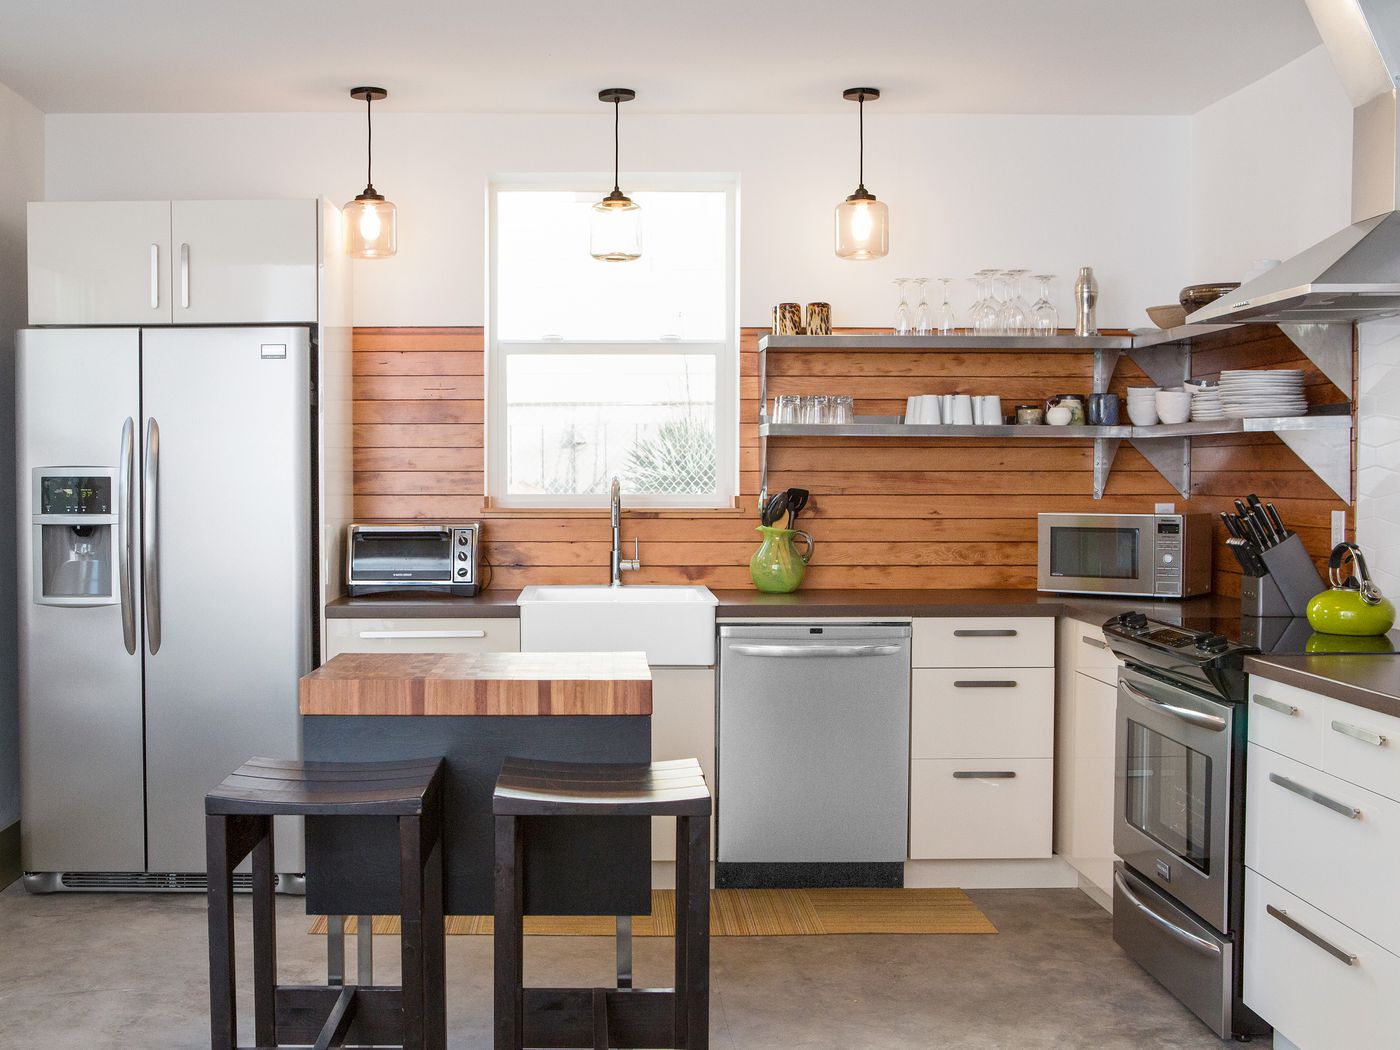 wooden kitchen backsplash, white cabinets, window, stainless steel appliances